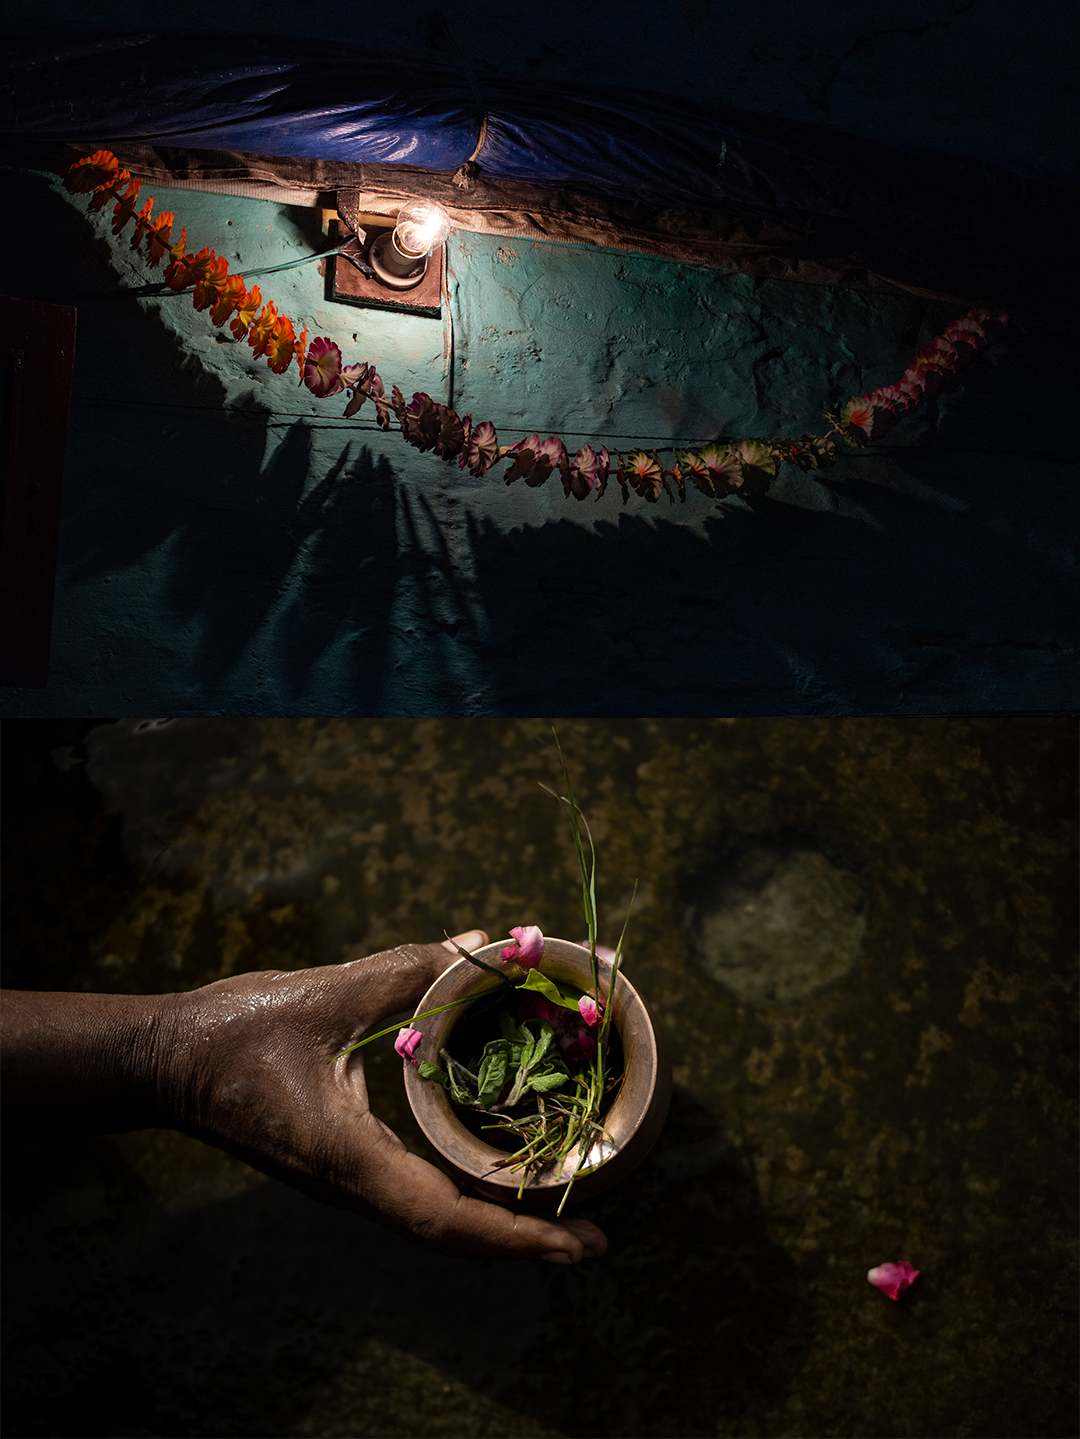 As flores são utilizadas em diversos rituais hindus – seja como adereço religioso na parte externa das casas (acima) ou em oferendas no Rio Ganges